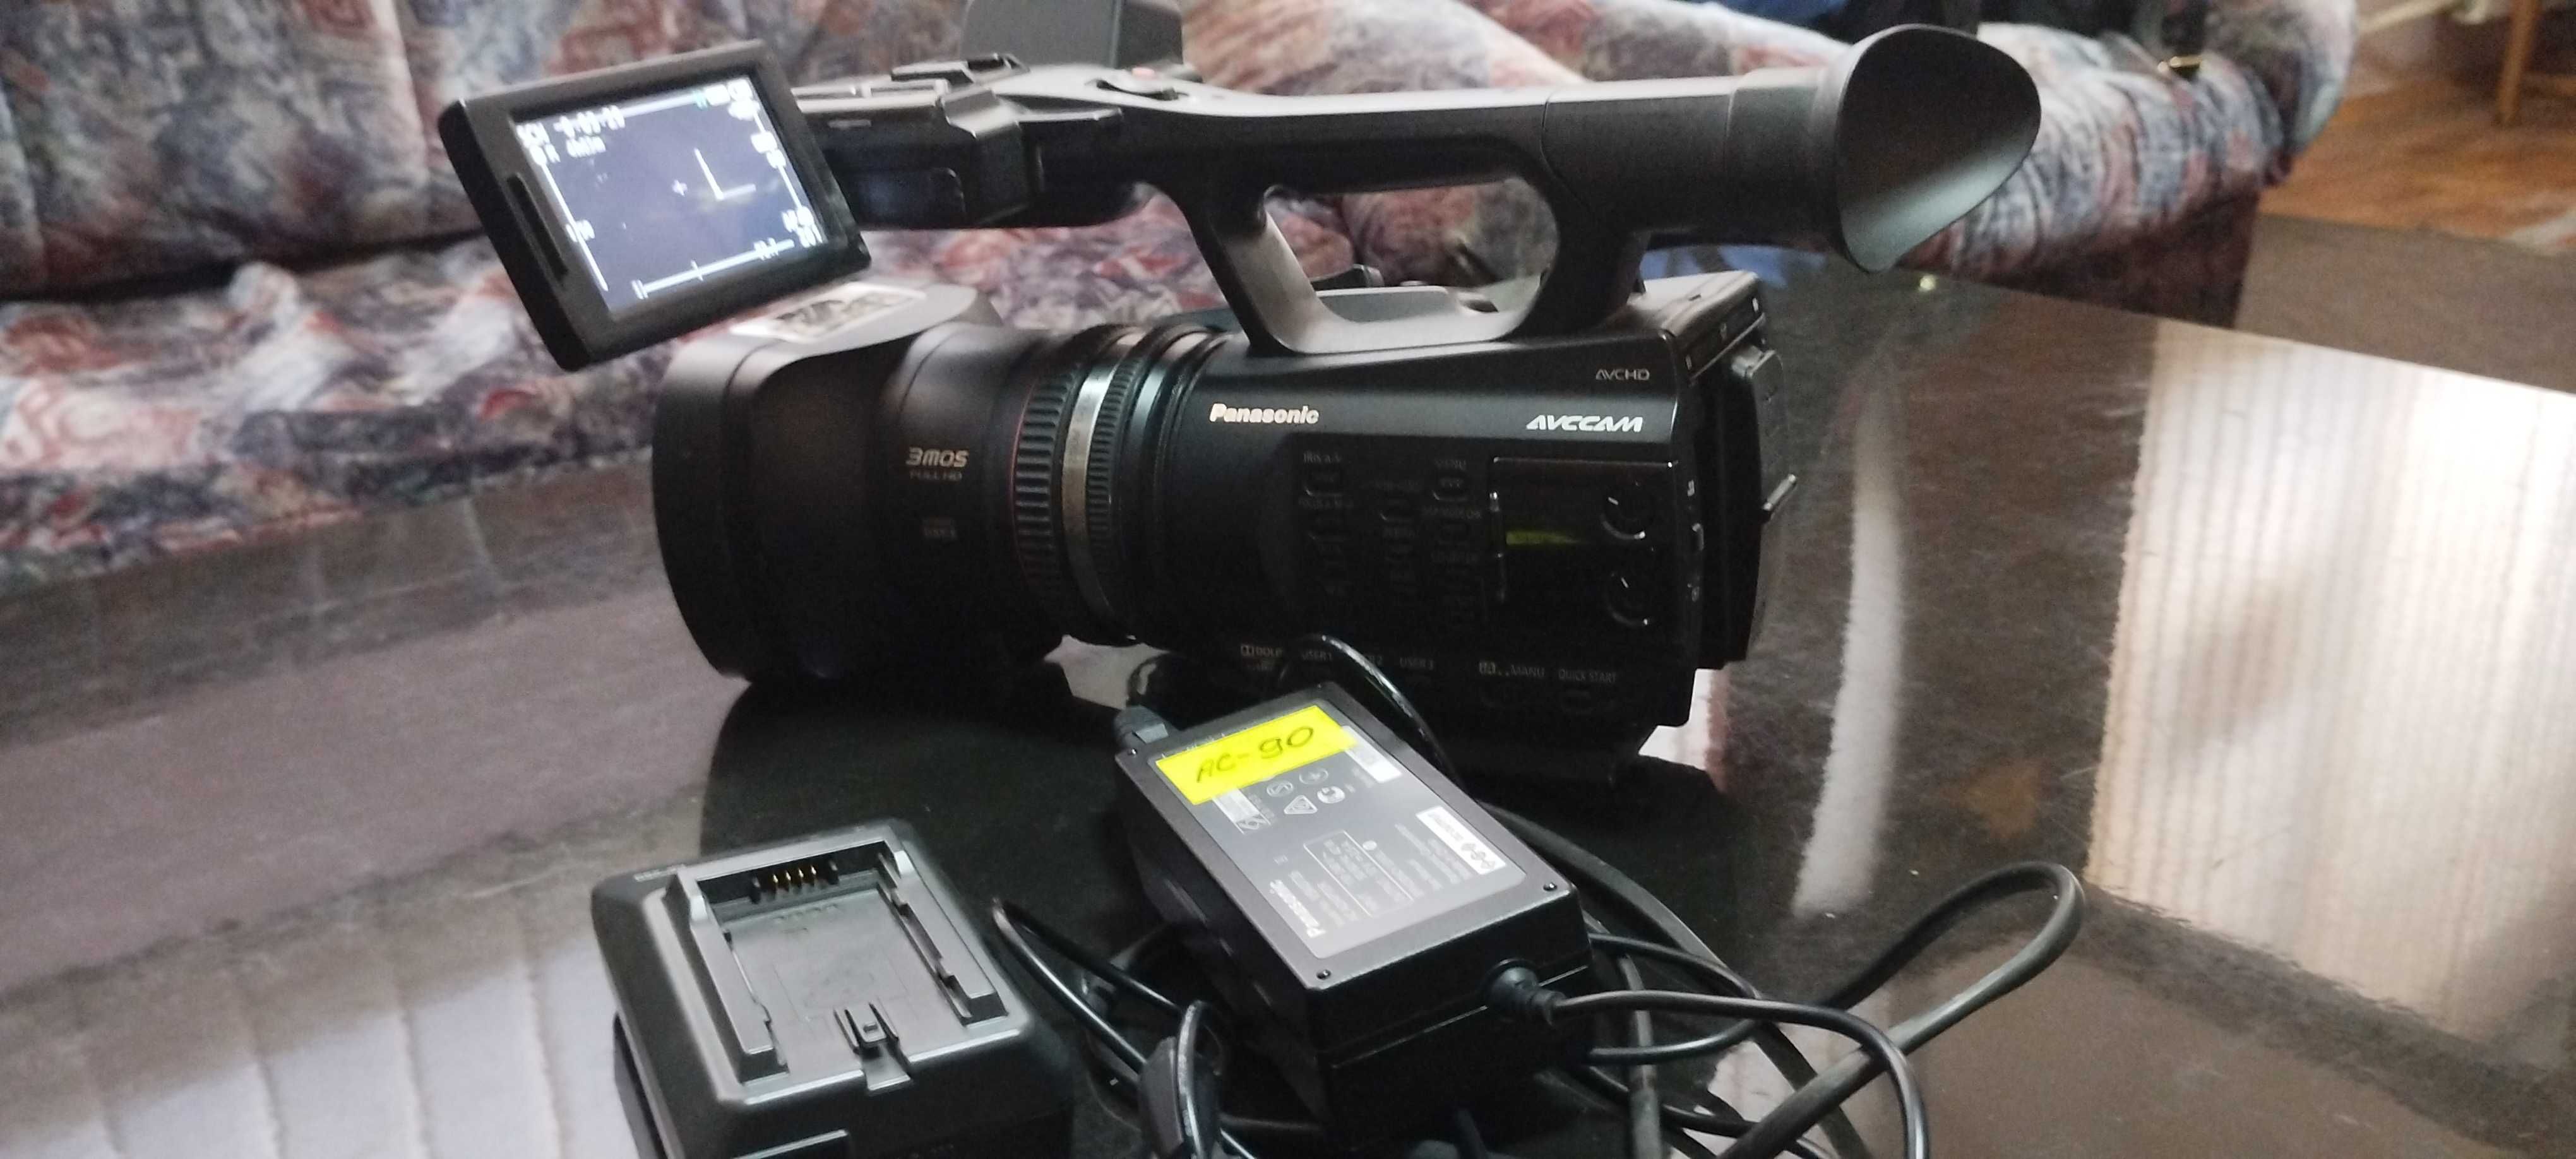 Відеокамера Panasonic AG-AC90